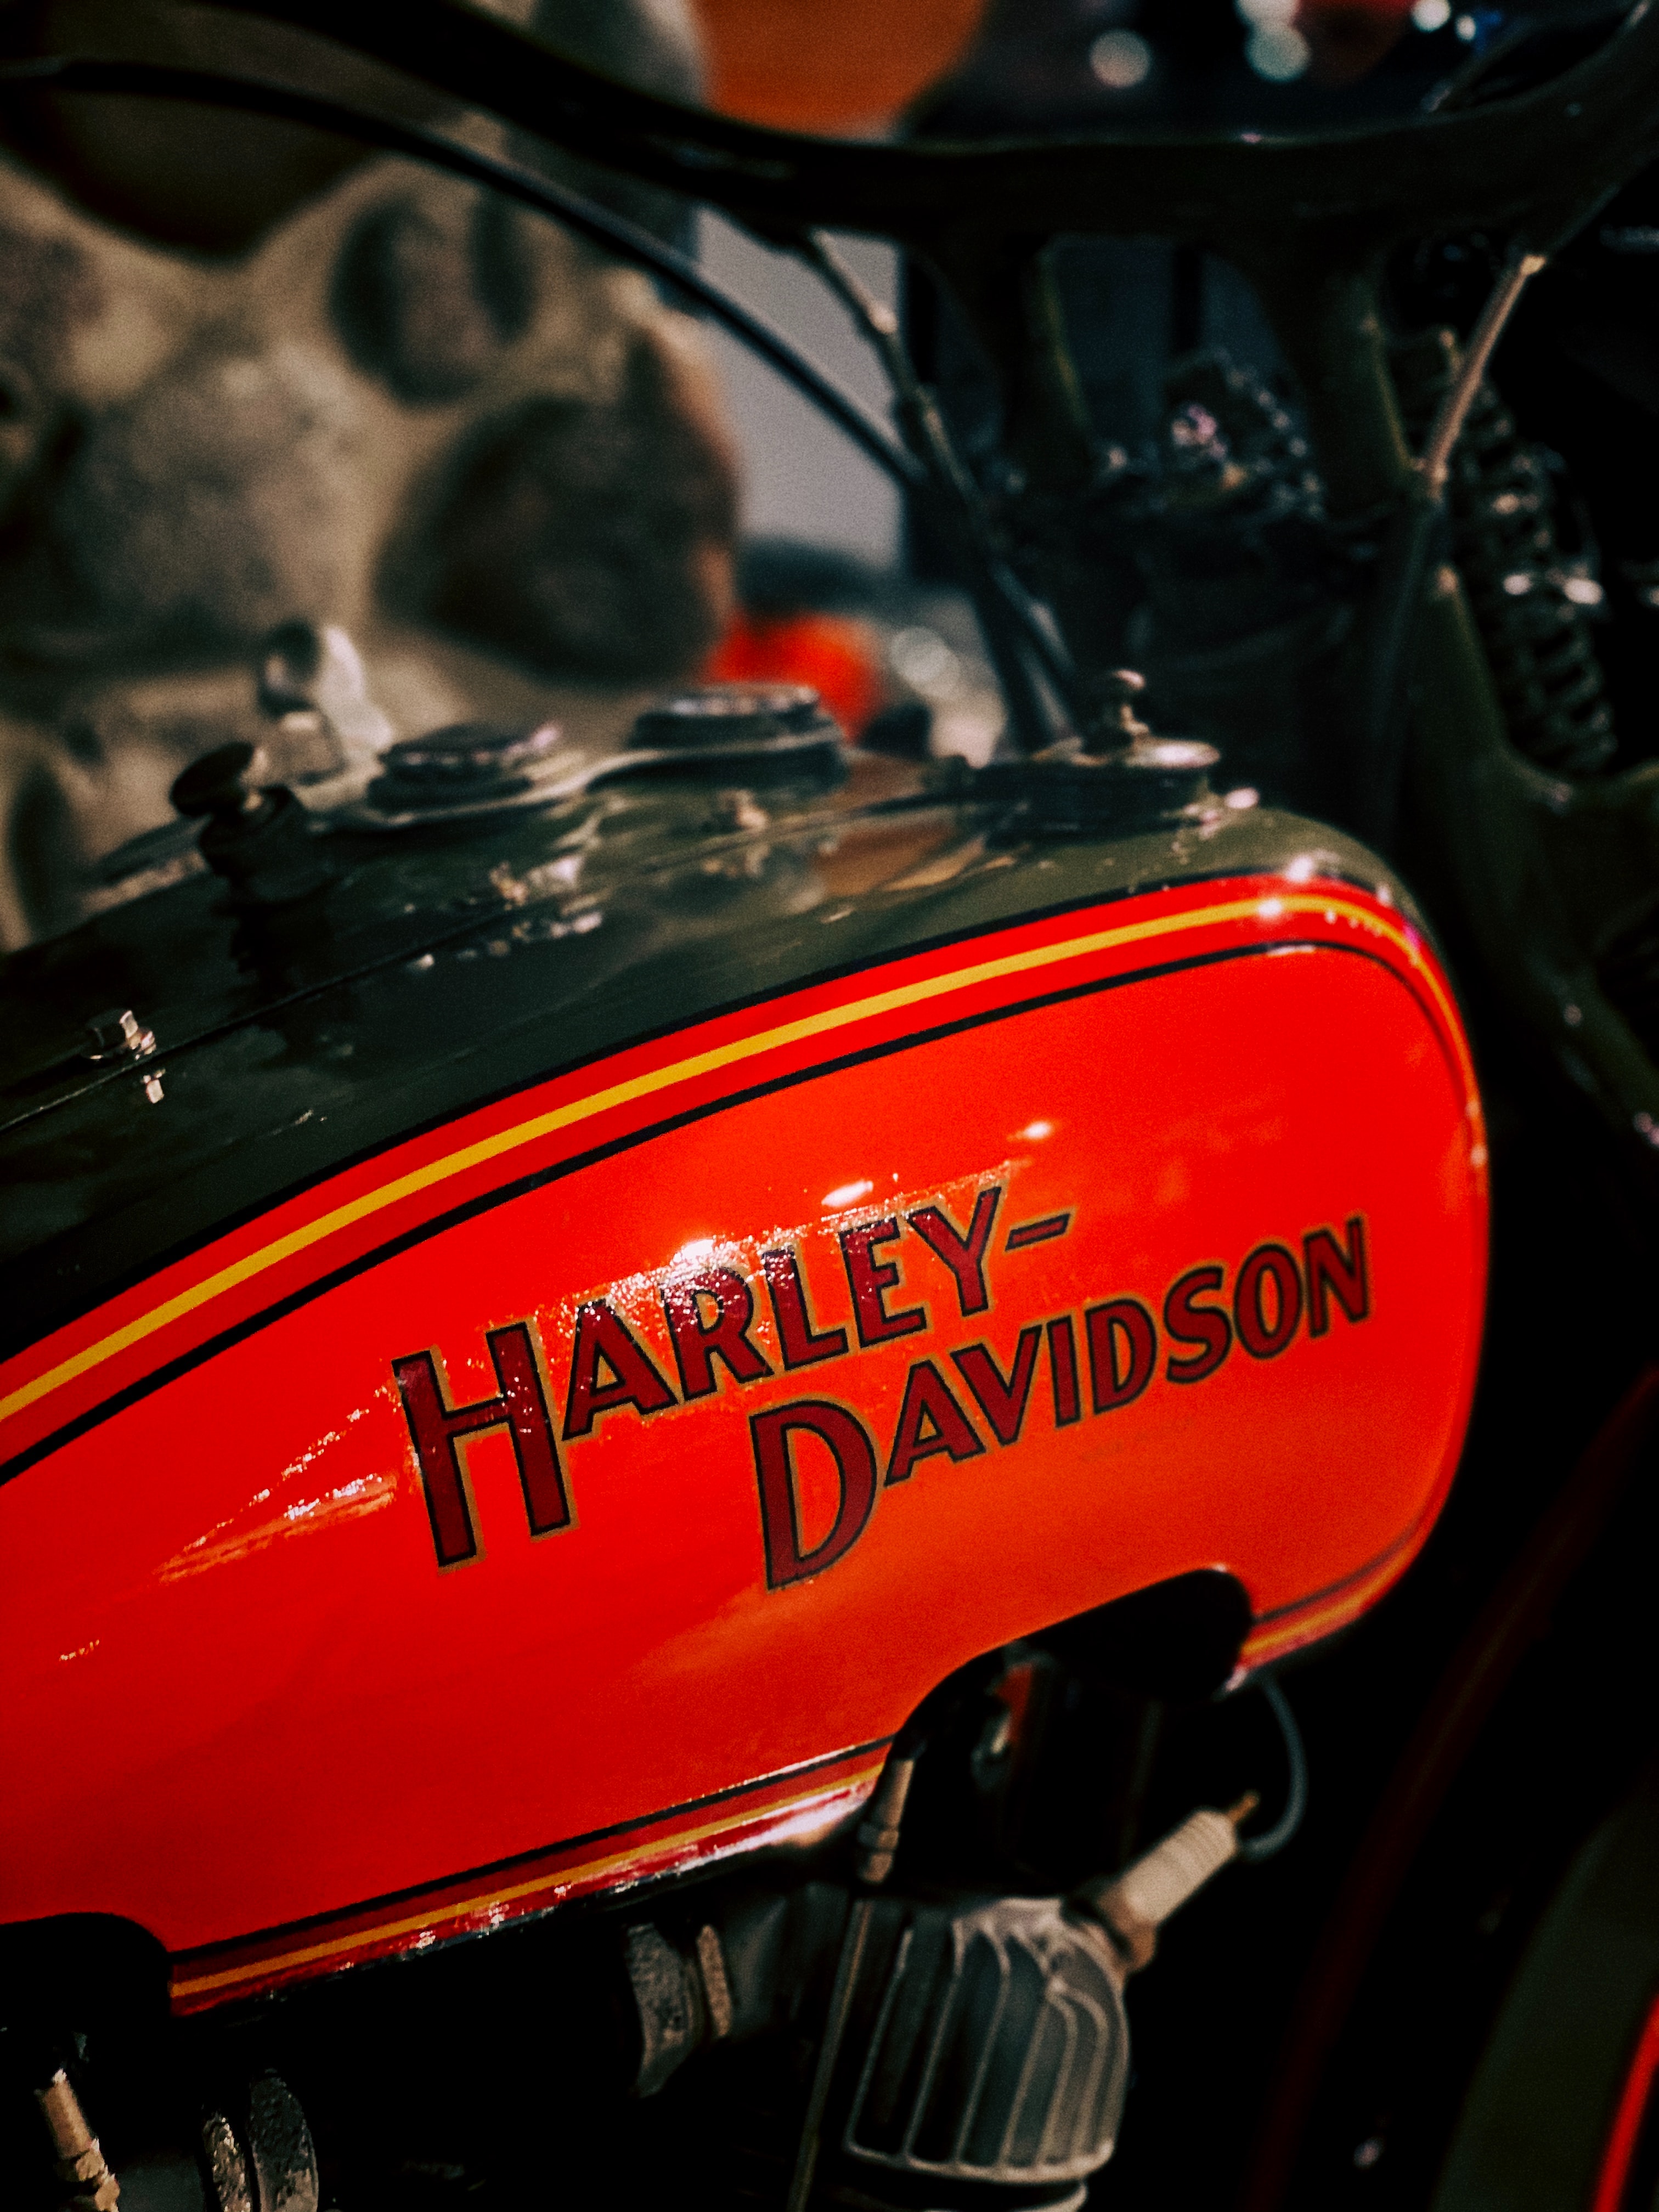 Harley Davidson logo on a bike